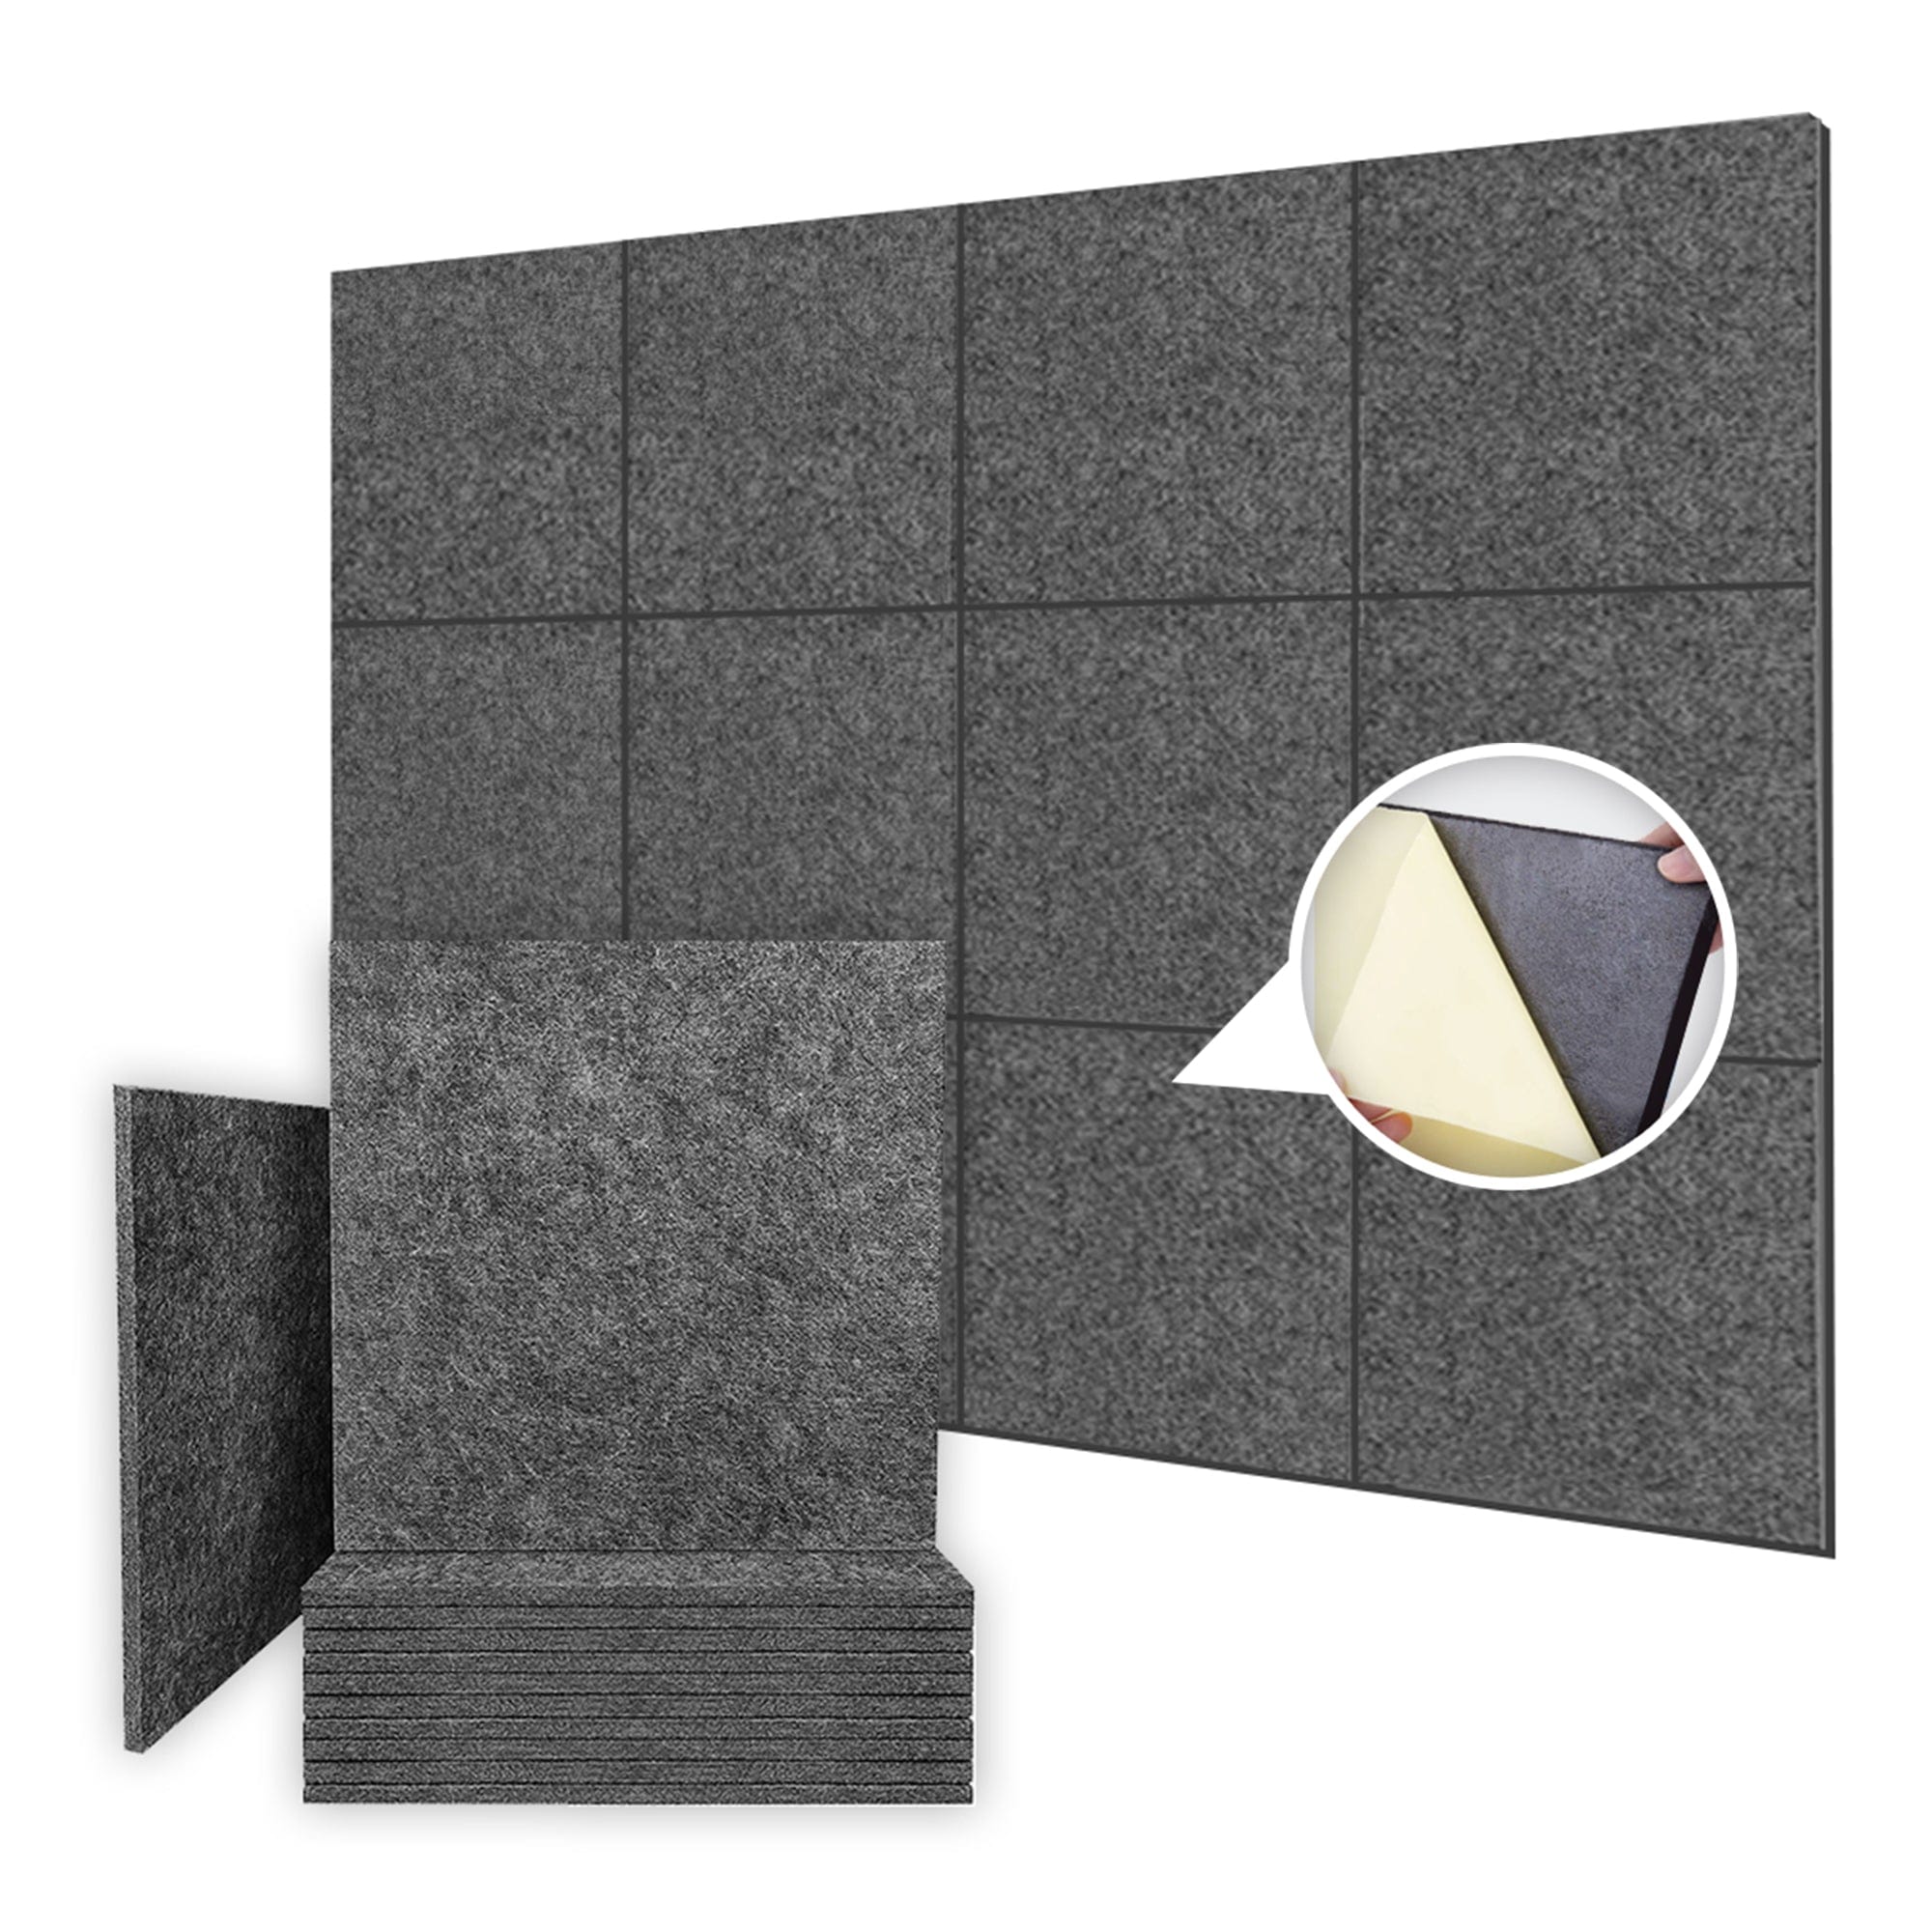 1 Piece - Door Soundproofing Kit All in One Acoustic Panels KK1184 Dark Gray / 1